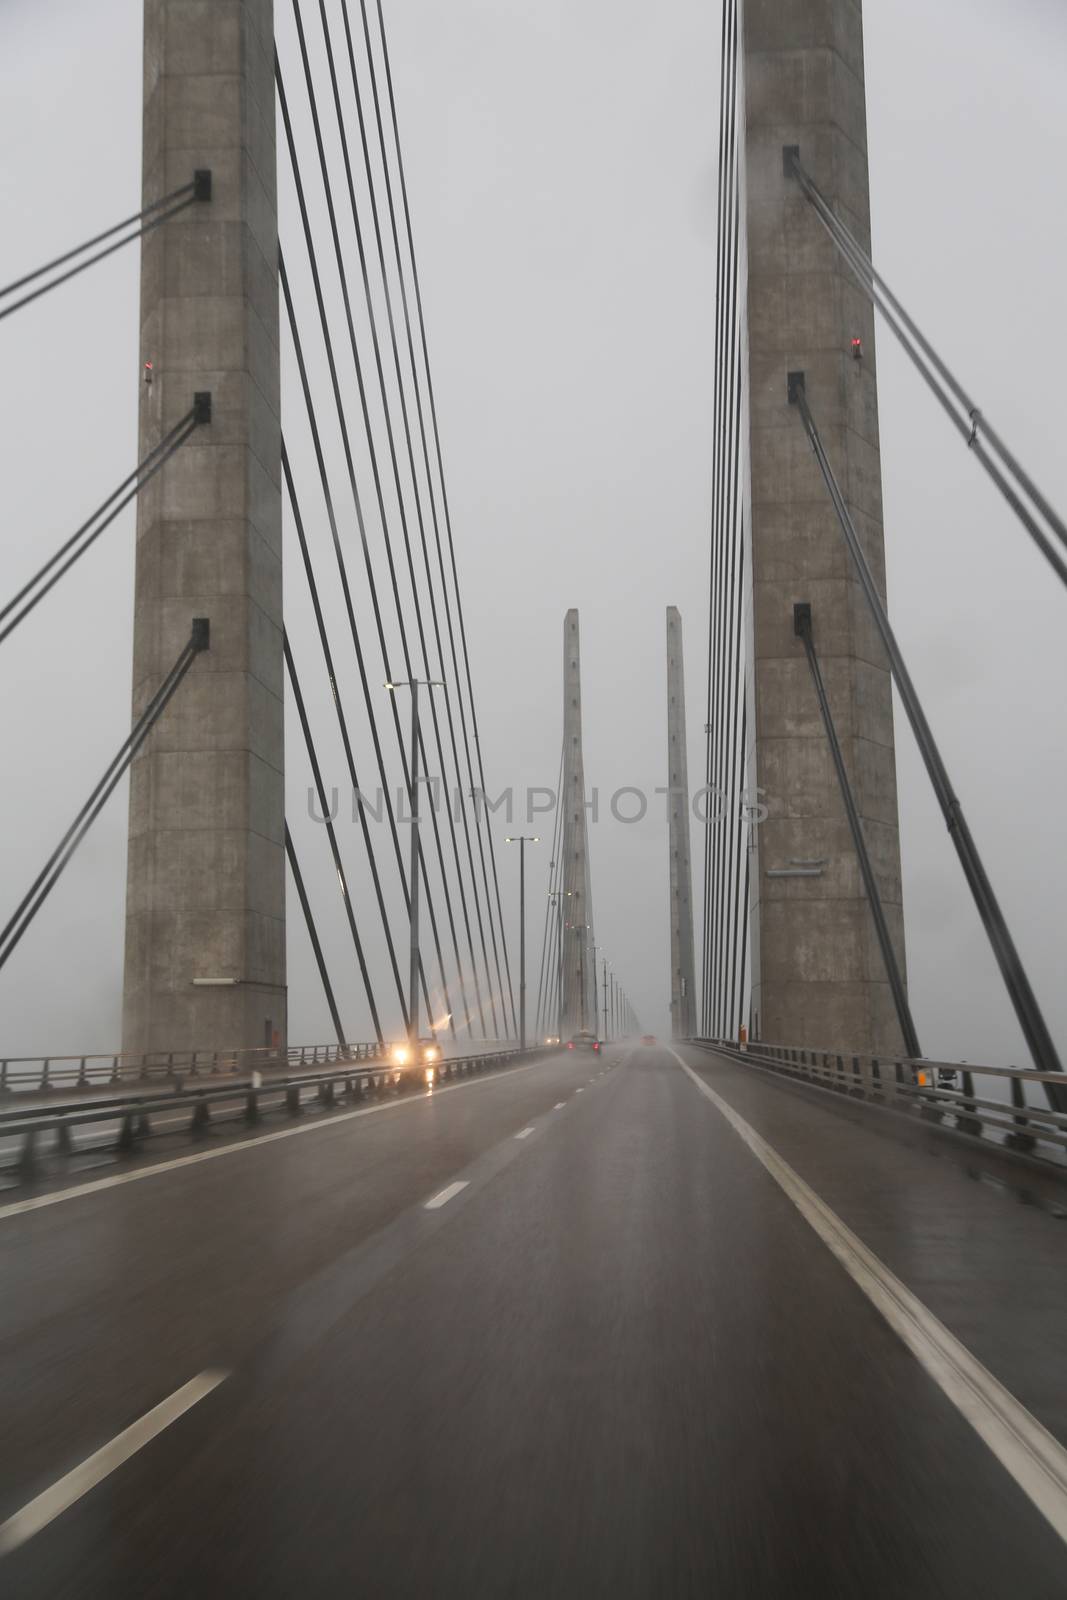 The Oresund Bridge by Kartouchken